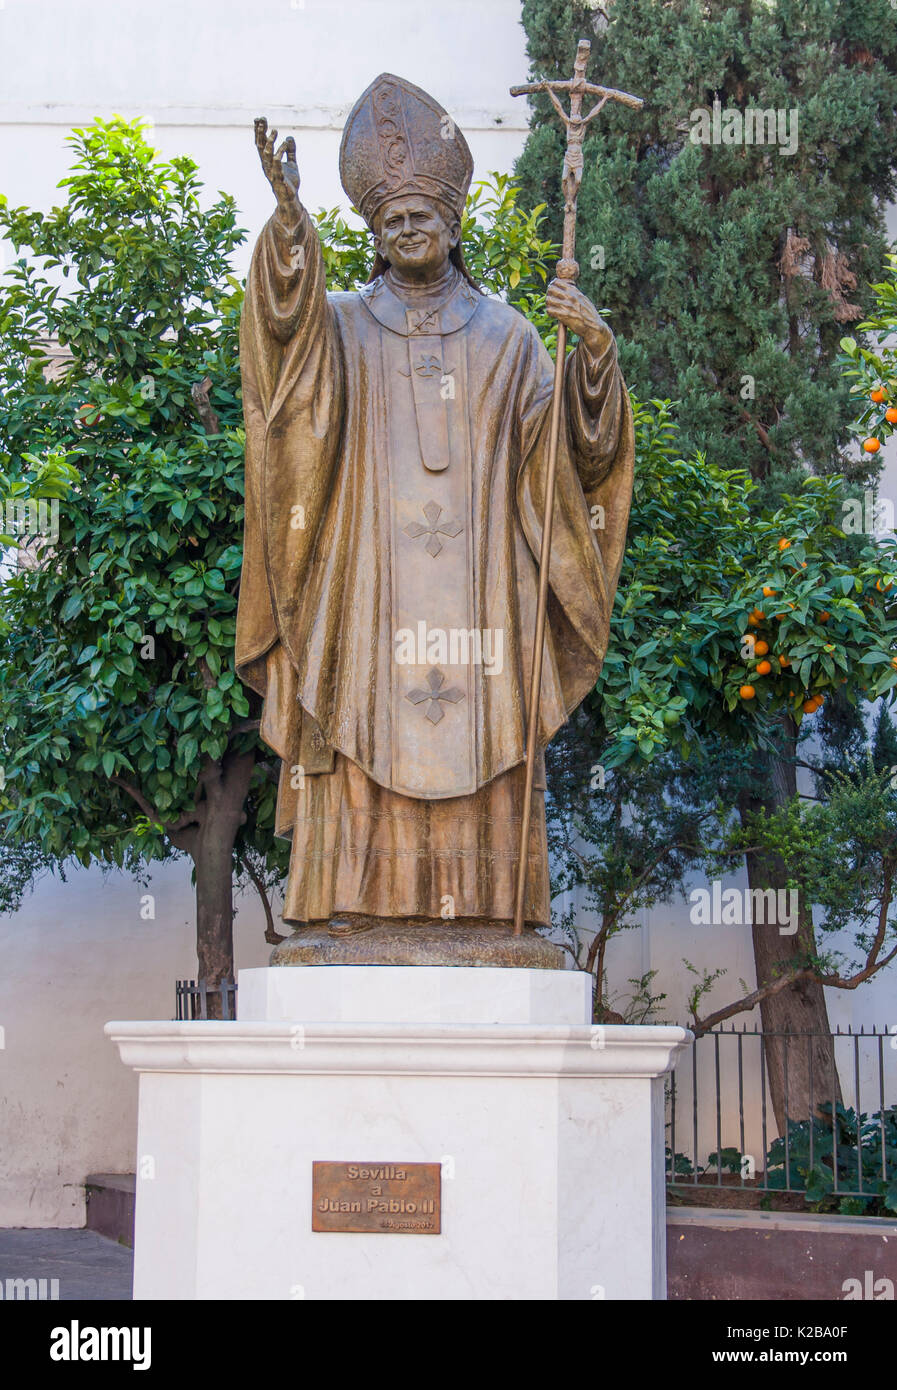 Plaza Virgen de los Reyes, Séville, Espagne. Statue du pape Saint John Paul II, 1920 - 2005. Pape de 1978 à 2005. Banque D'Images